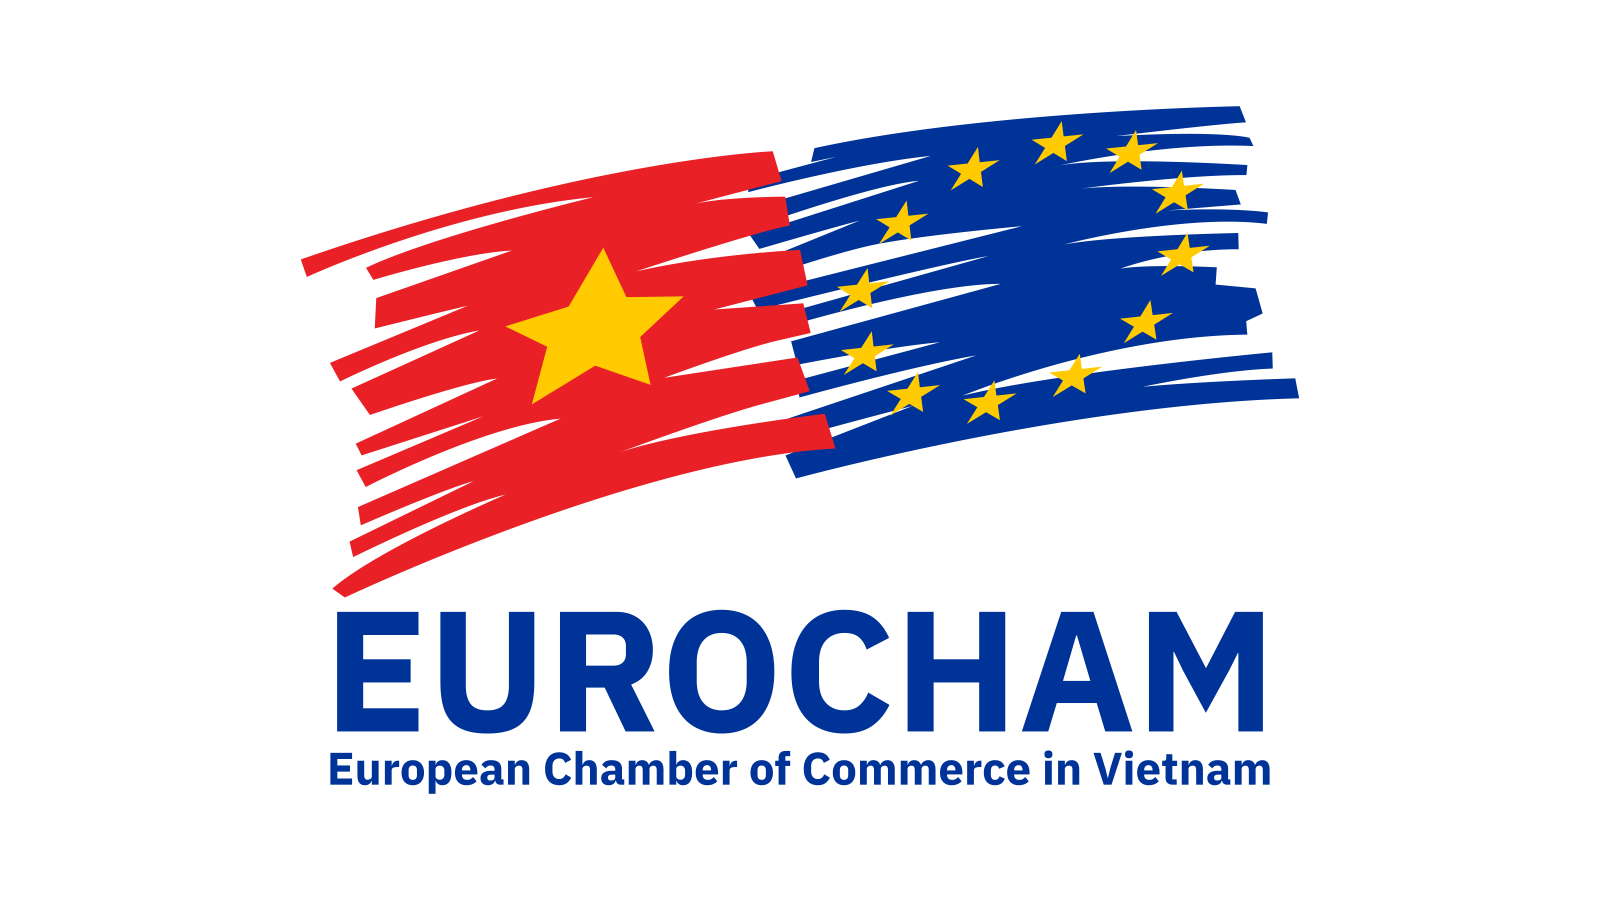 EuroCham